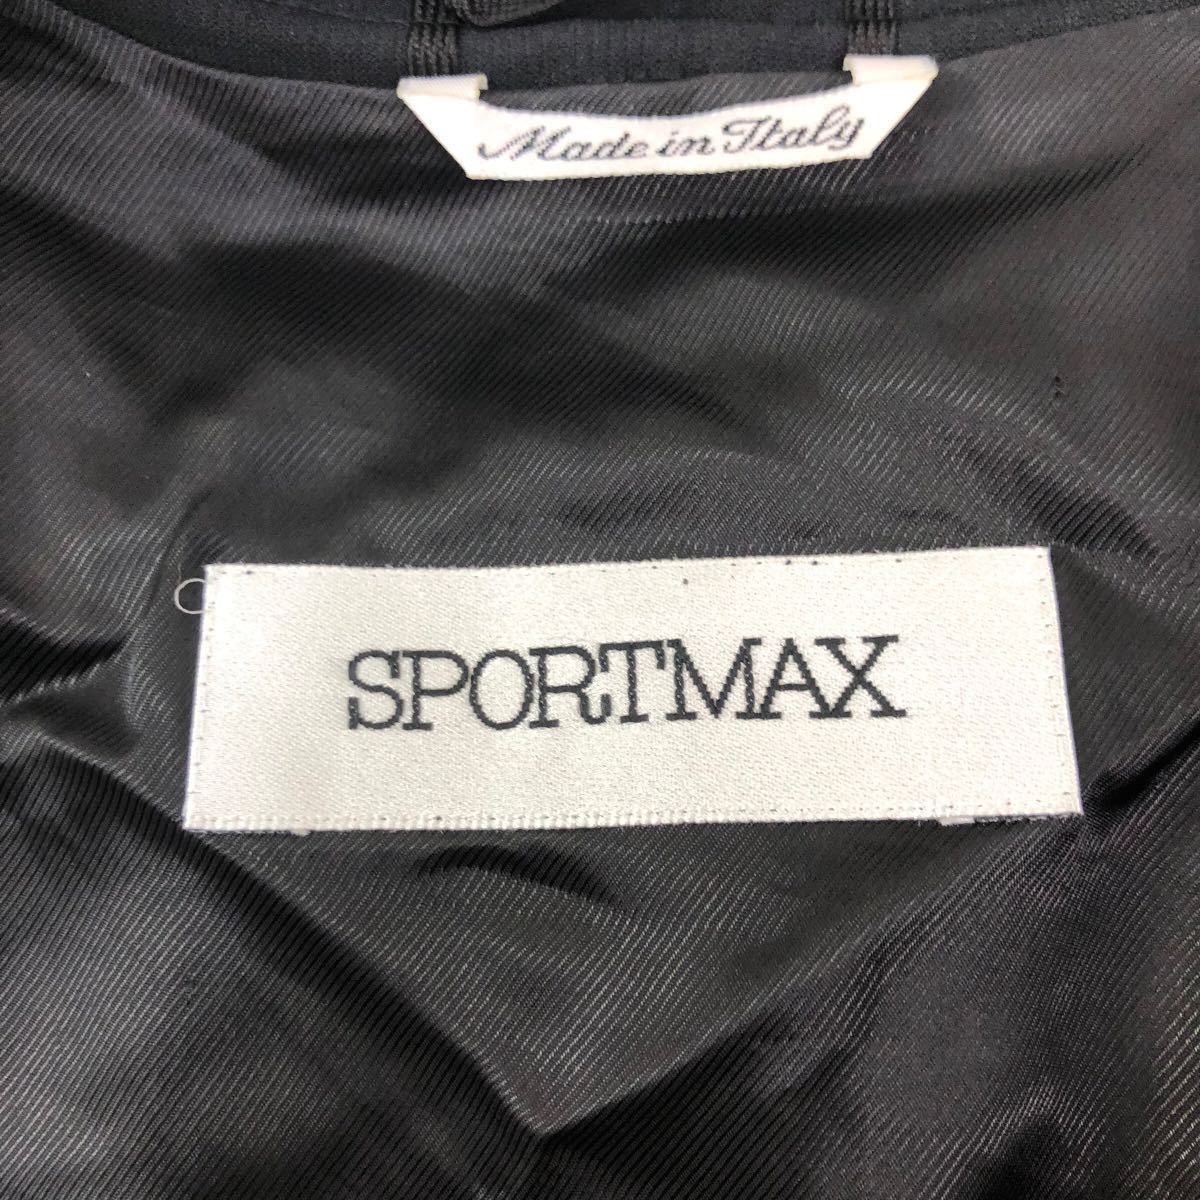 B342 イタリア製 SPORTMAX スポーツマックス ジャケット アウター 上着 羽織り 長袖 ストレッチ ブラック 黒 レディース 38_画像8